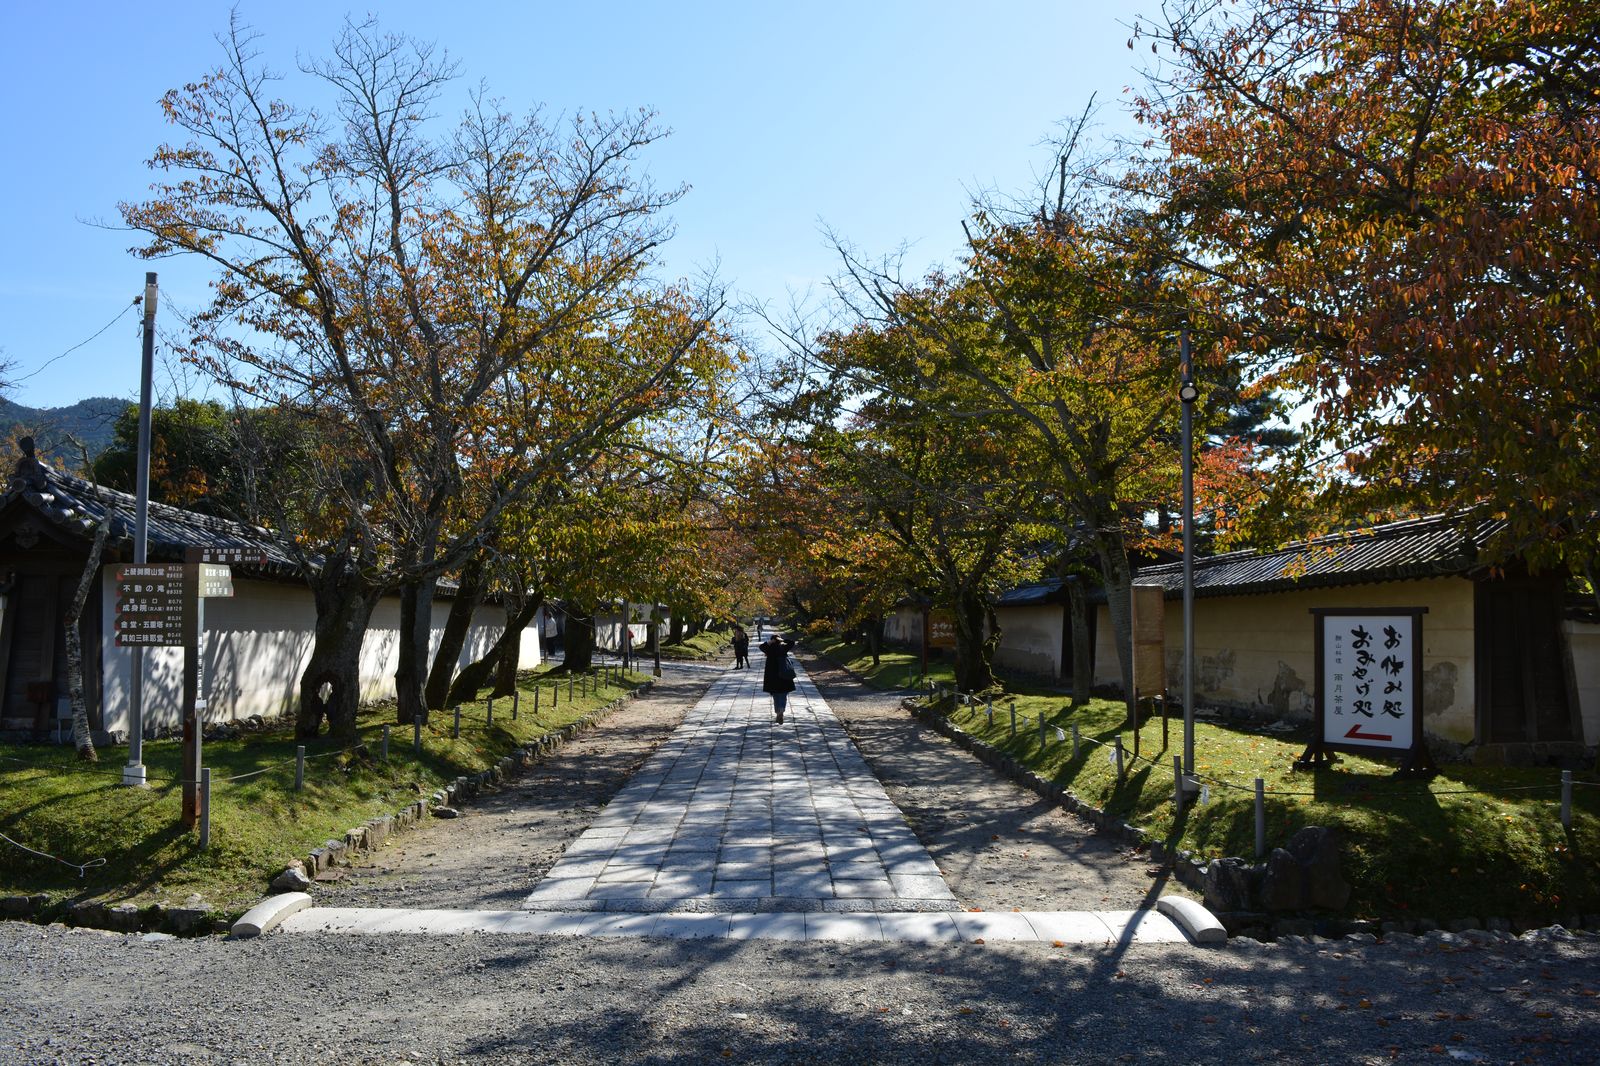 При всей застроенности и недостатке места японцы не жалеют его для храмового комплекса